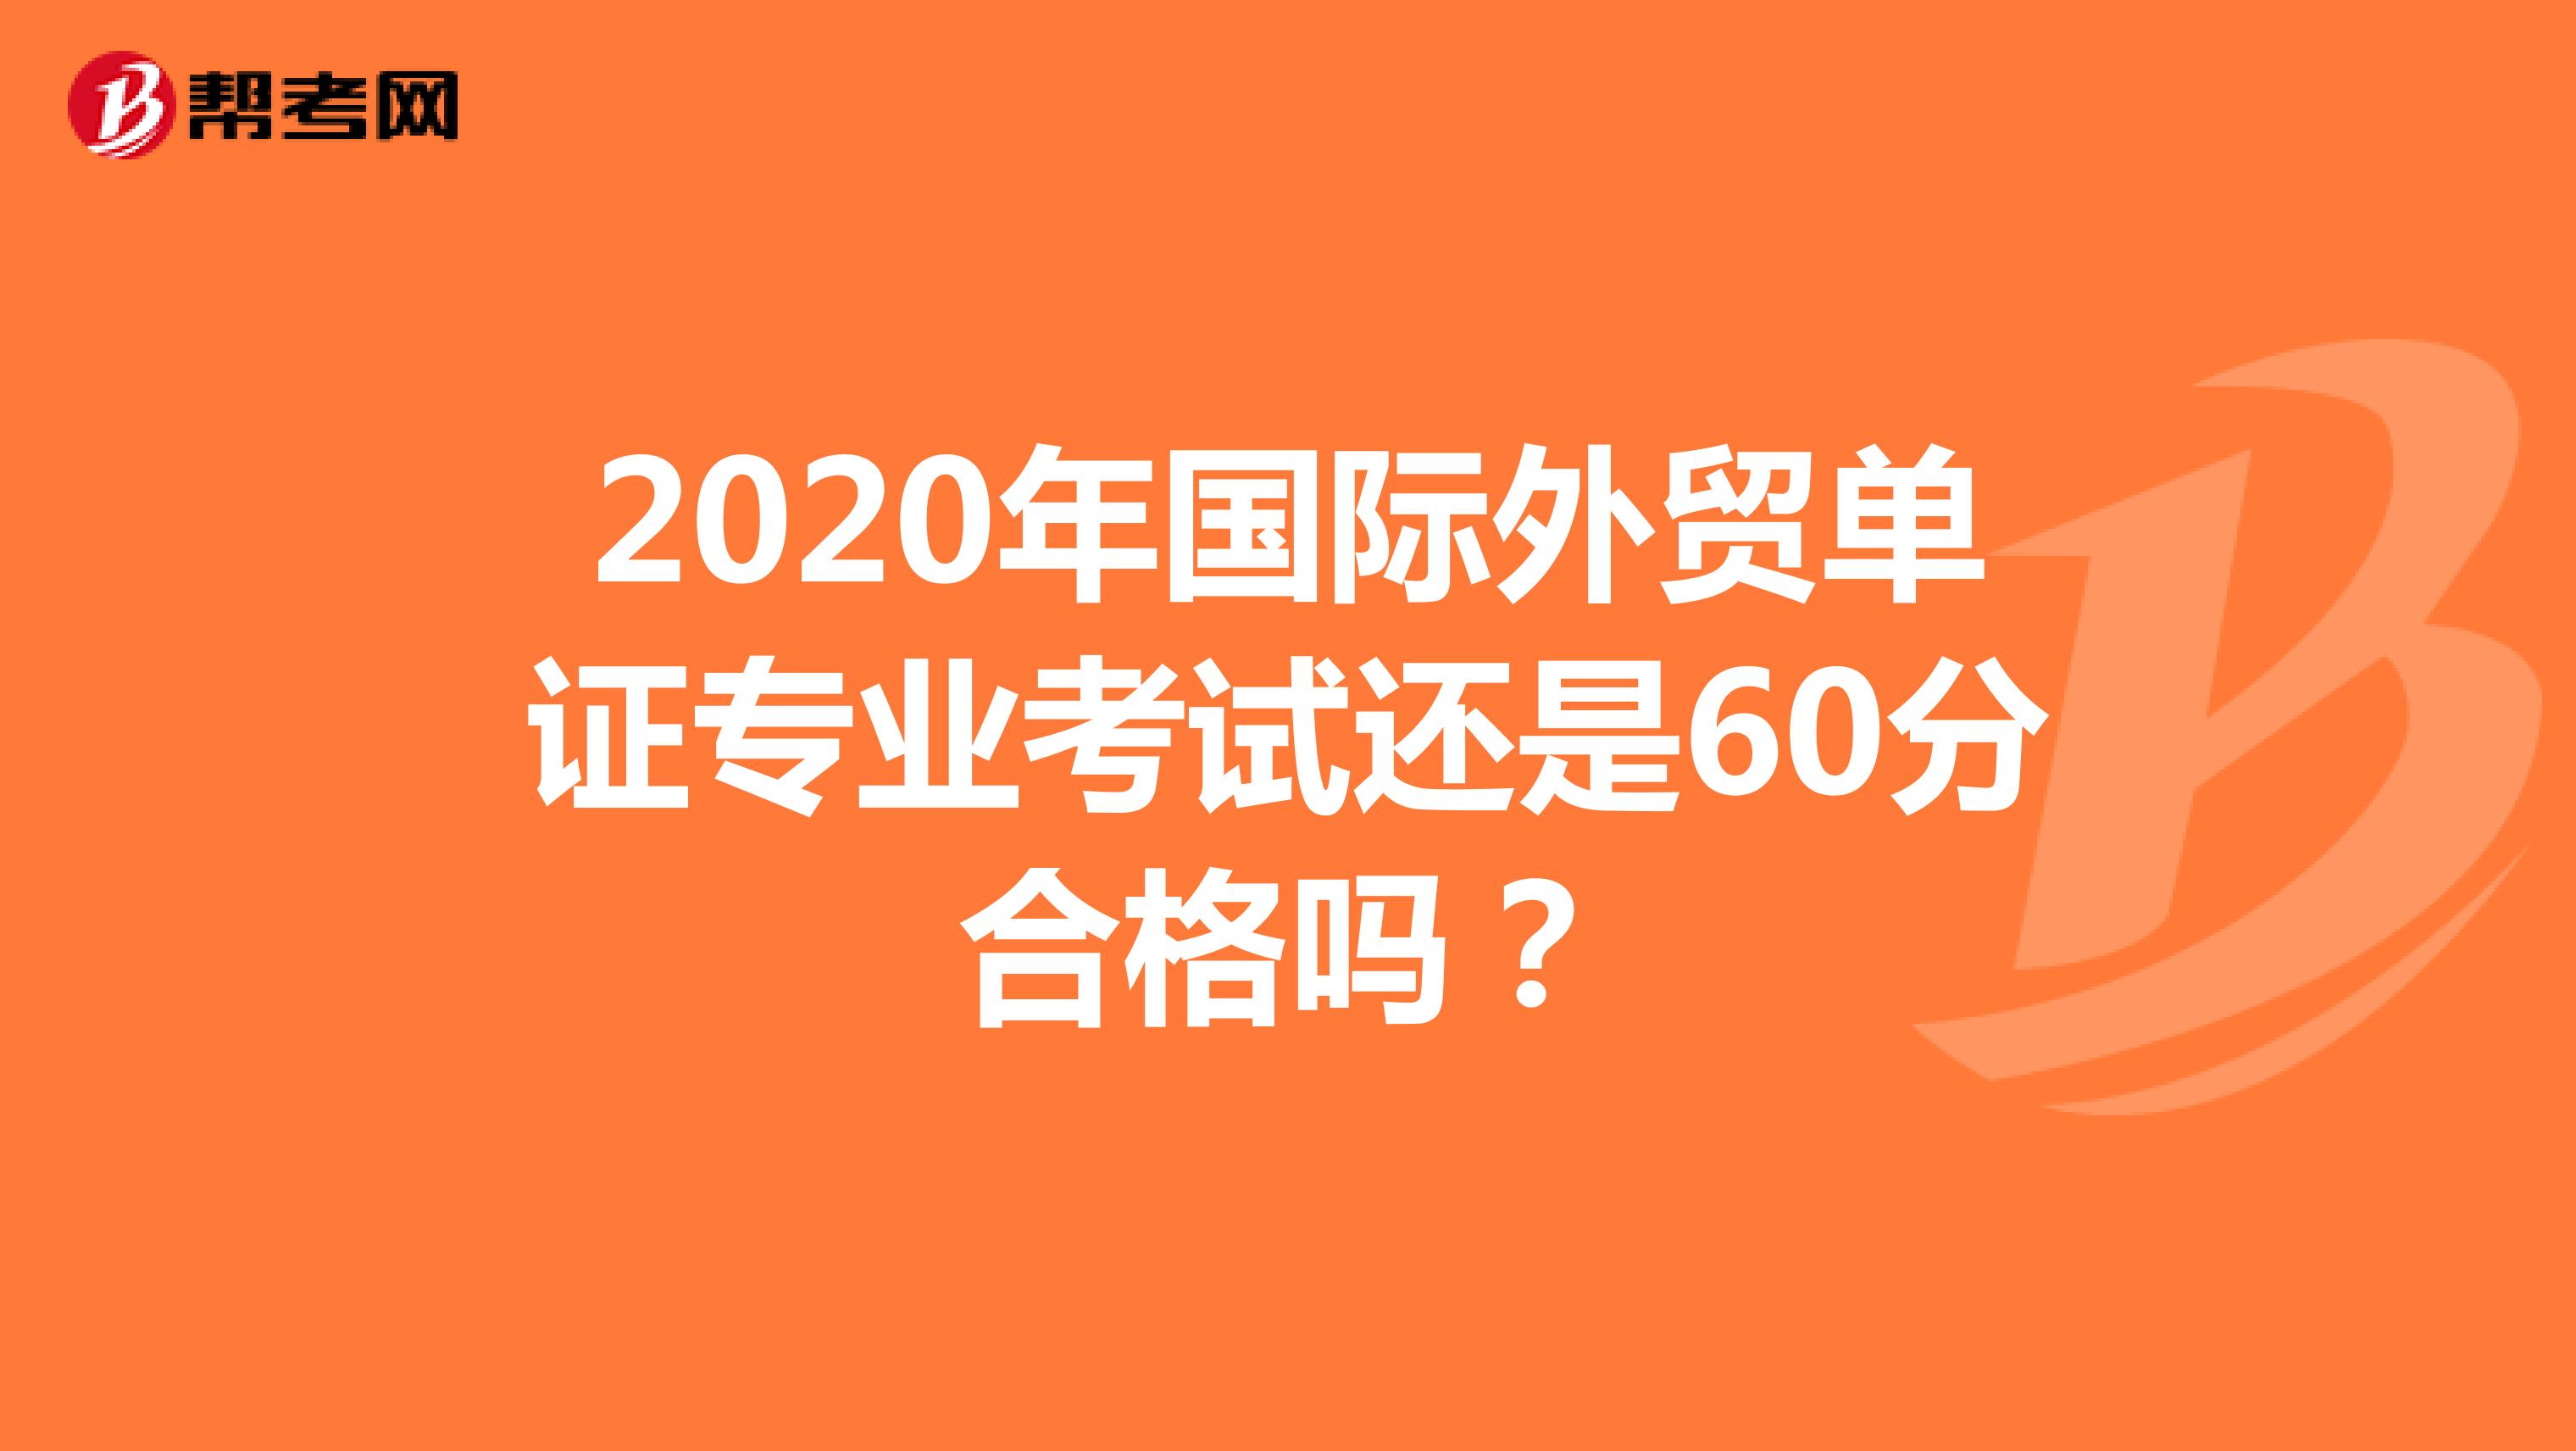 2020年国际外贸单证专业考试还是60分合格吗？